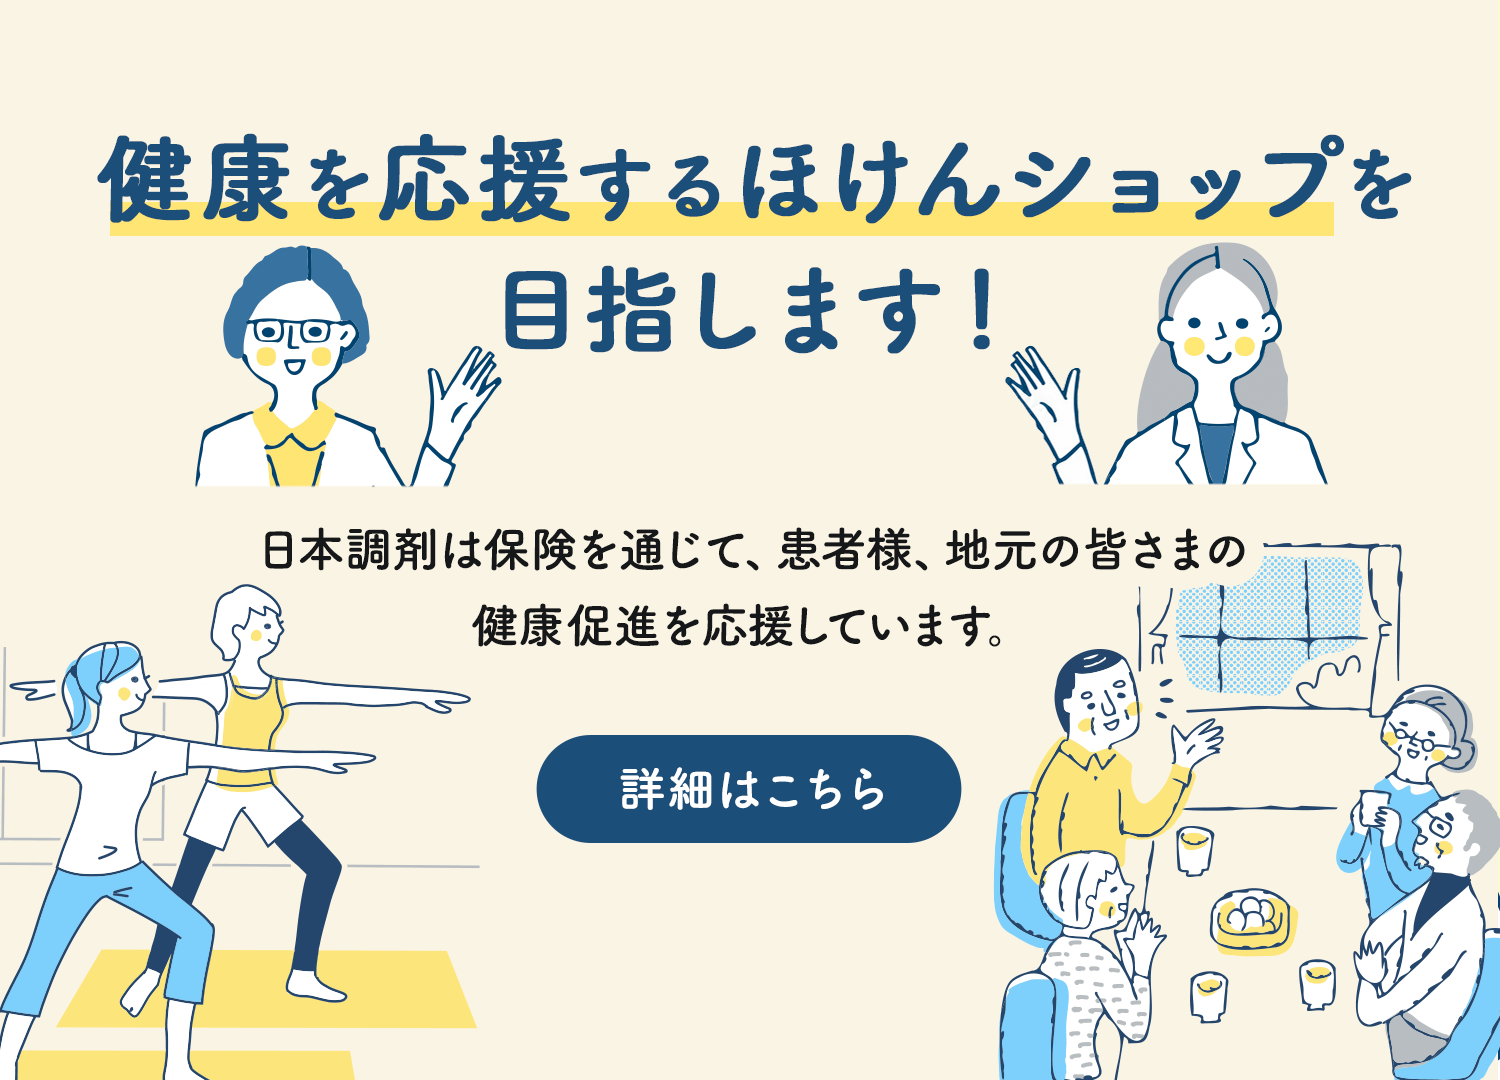 健康を応援するほけんショップを目指します！日本調剤は保険を通じて、患者様、地元の皆さまの健康促進を応援しています。詳細はこちら